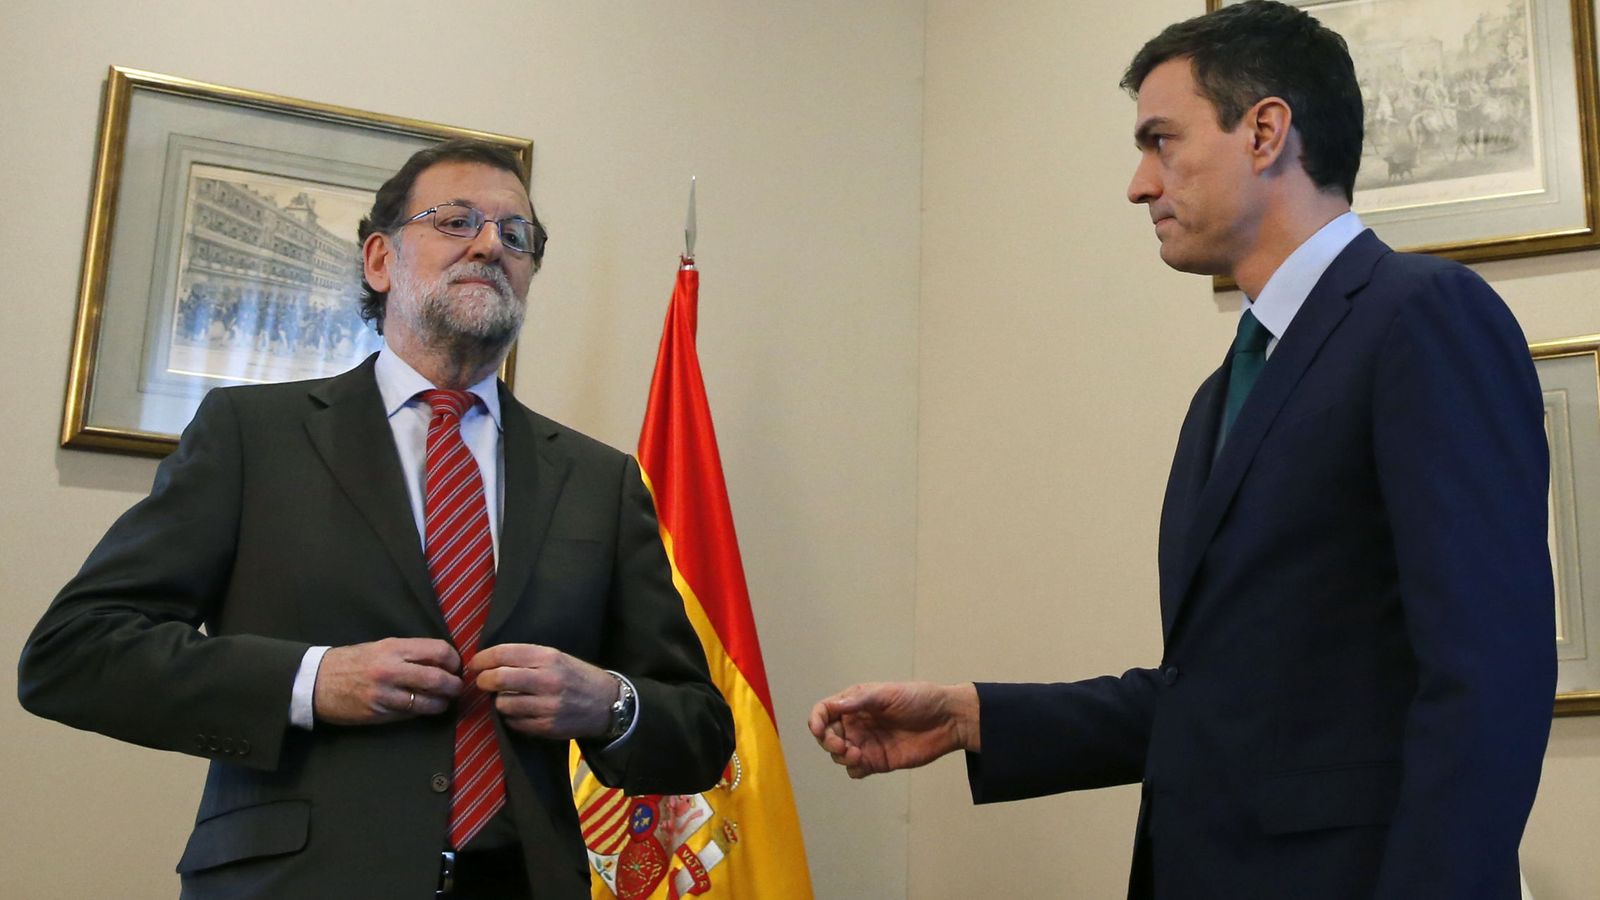 Foto: El presidente del Gobierno en funciones, Mariano Rajoy, junto al secretario general del PSOE, Pedro Sánchez. (EFE)